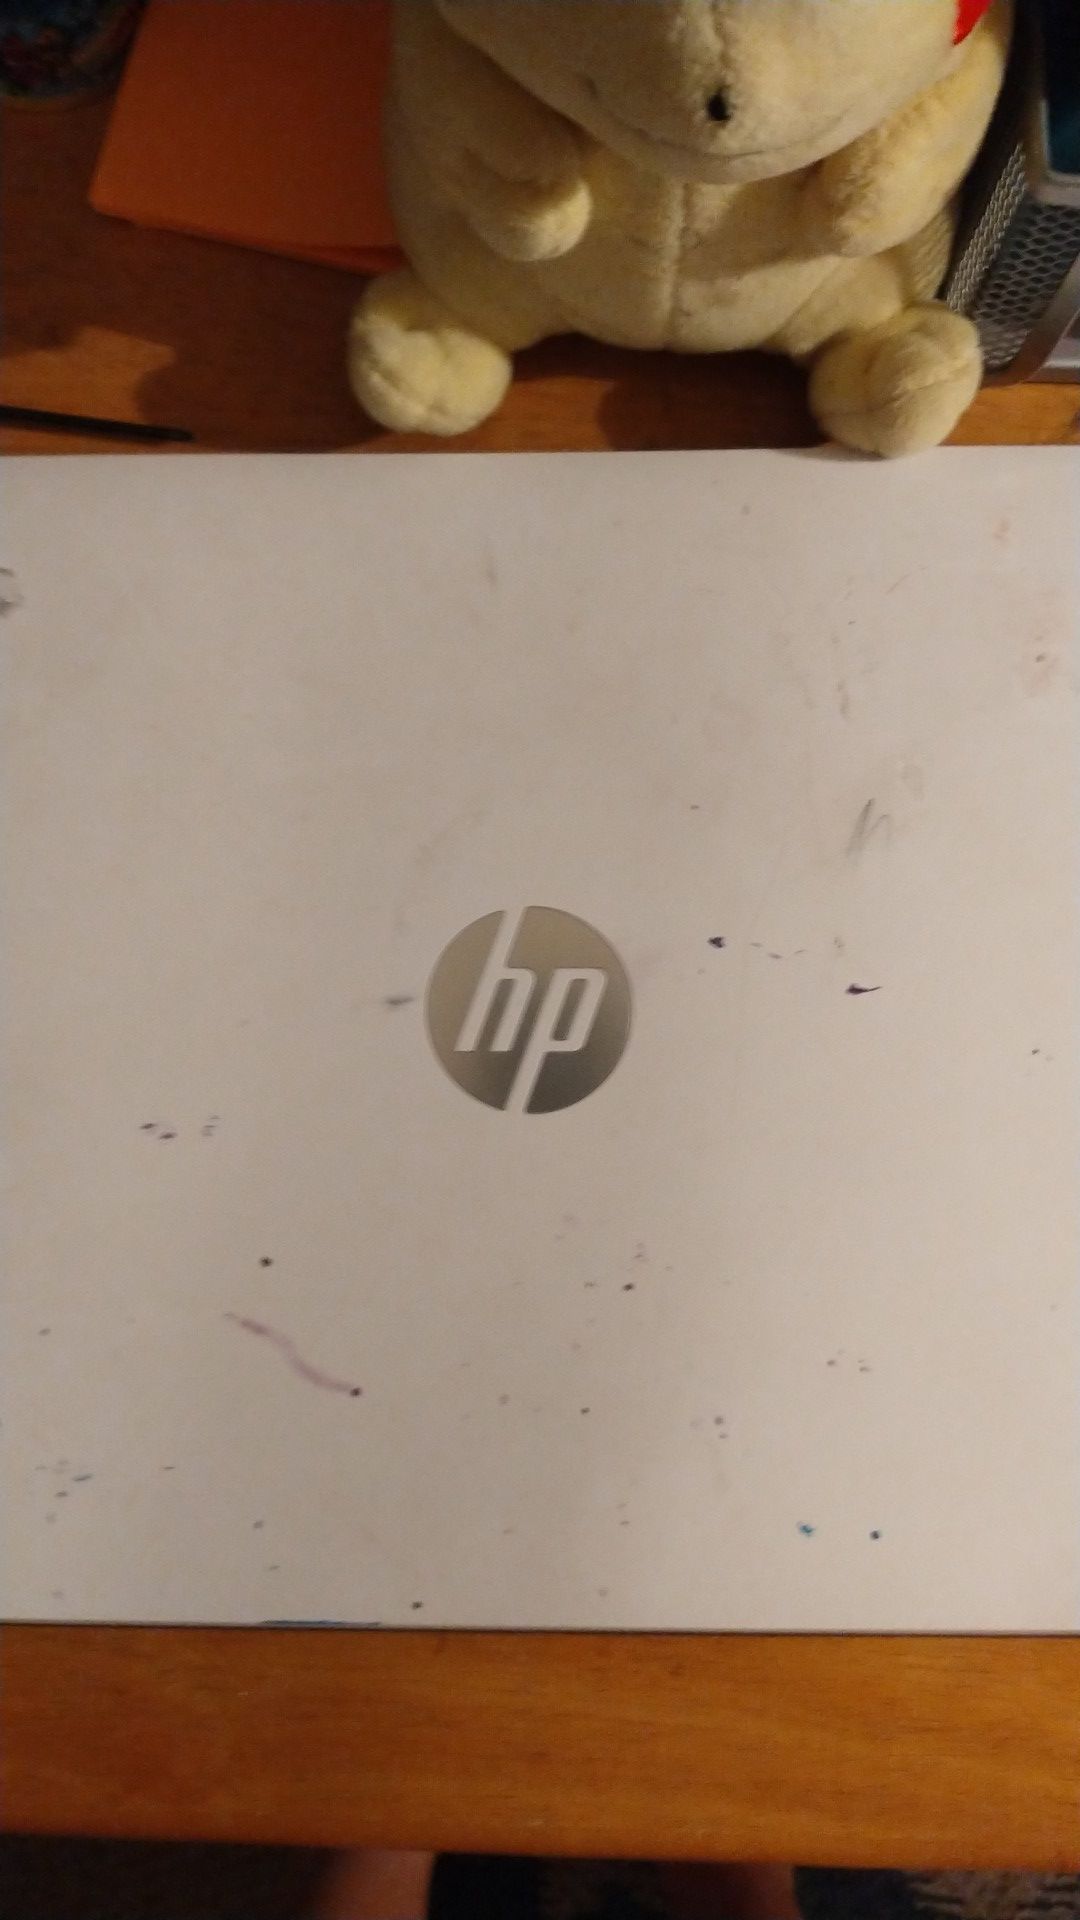 Broken HP laptop screen cracked